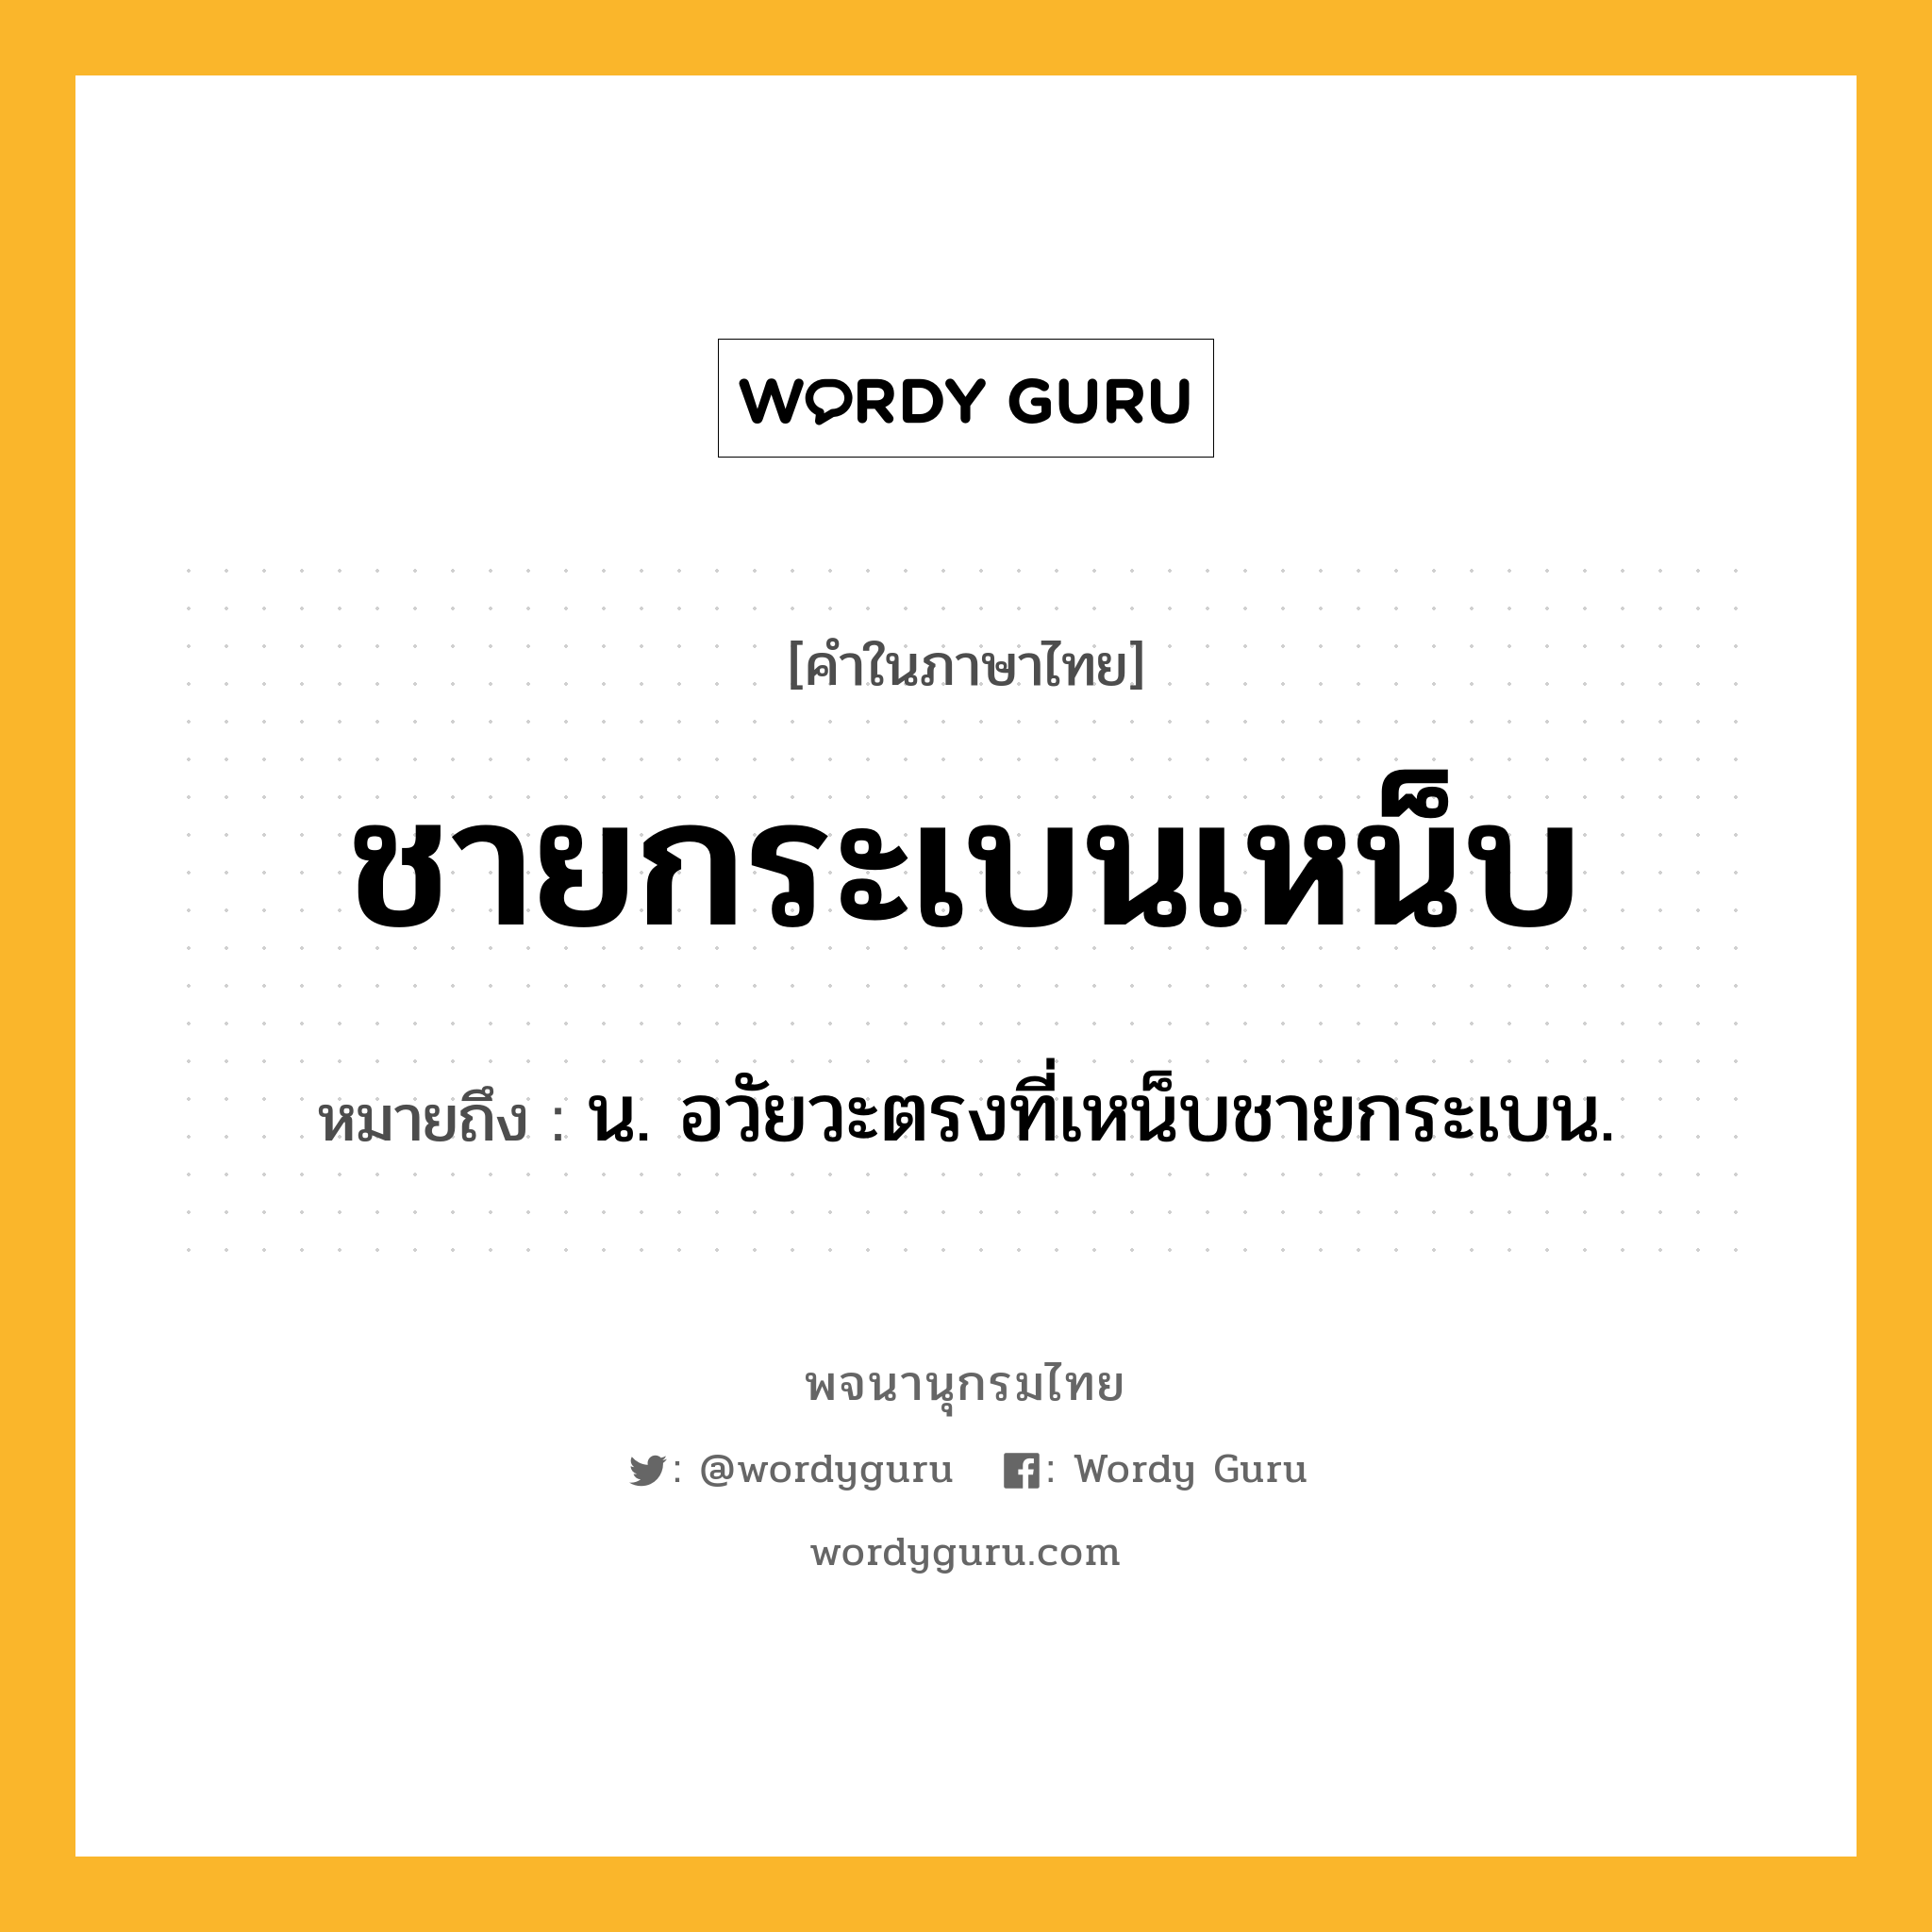 ชายกระเบนเหน็บ ความหมาย หมายถึงอะไร?, คำในภาษาไทย ชายกระเบนเหน็บ หมายถึง น. อวัยวะตรงที่เหน็บชายกระเบน.